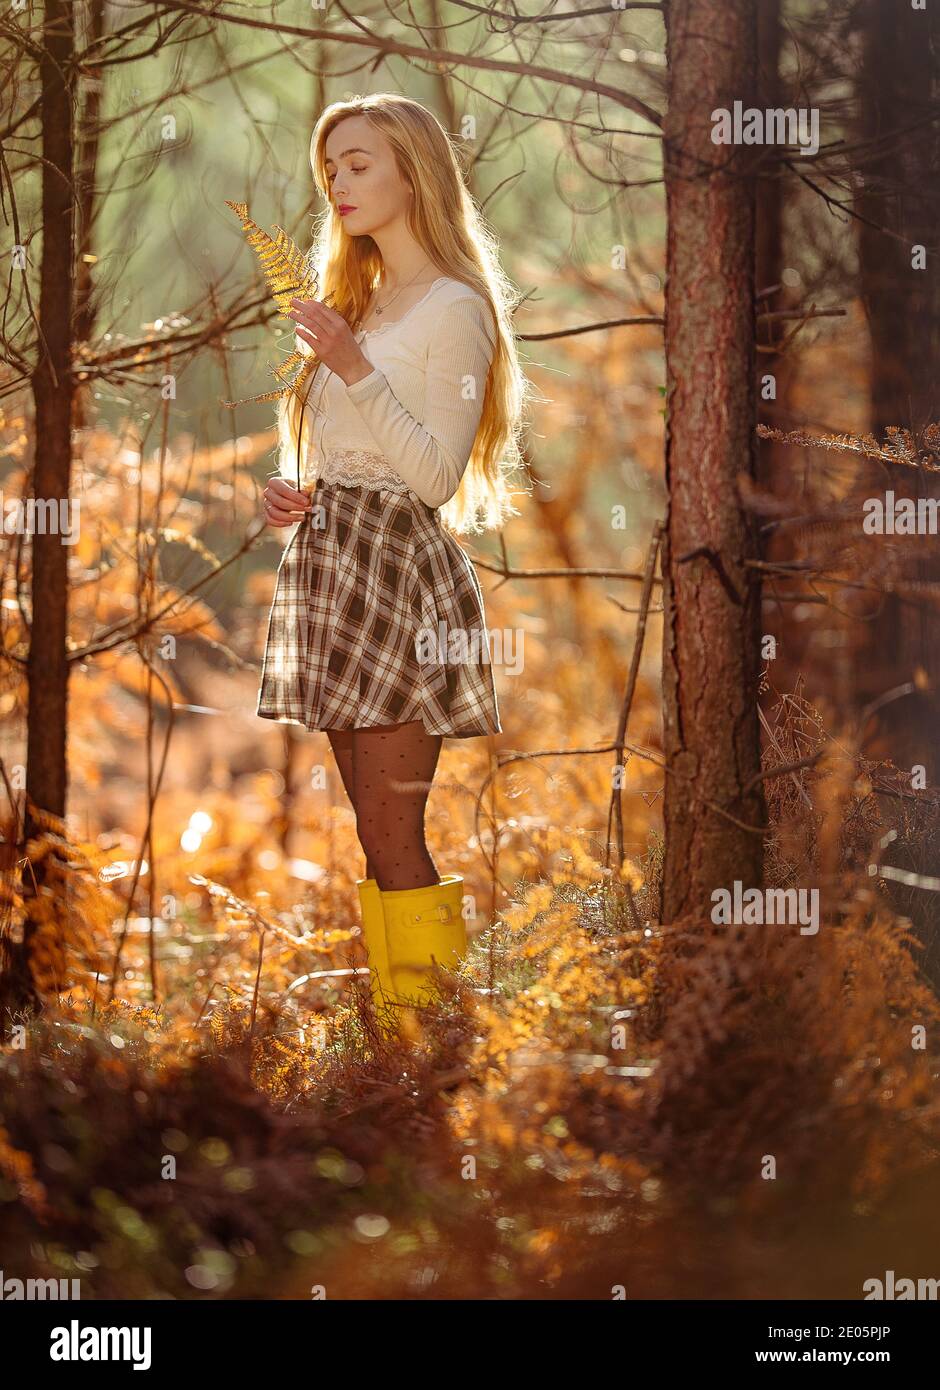 Une jeune femme naturellement belle (20 ans) se connecte à la nature dans une image rêveuse avec des teintes automnales rétro-éclairées avec le soleil dans la Nouvelle forêt Angleterre. Banque D'Images